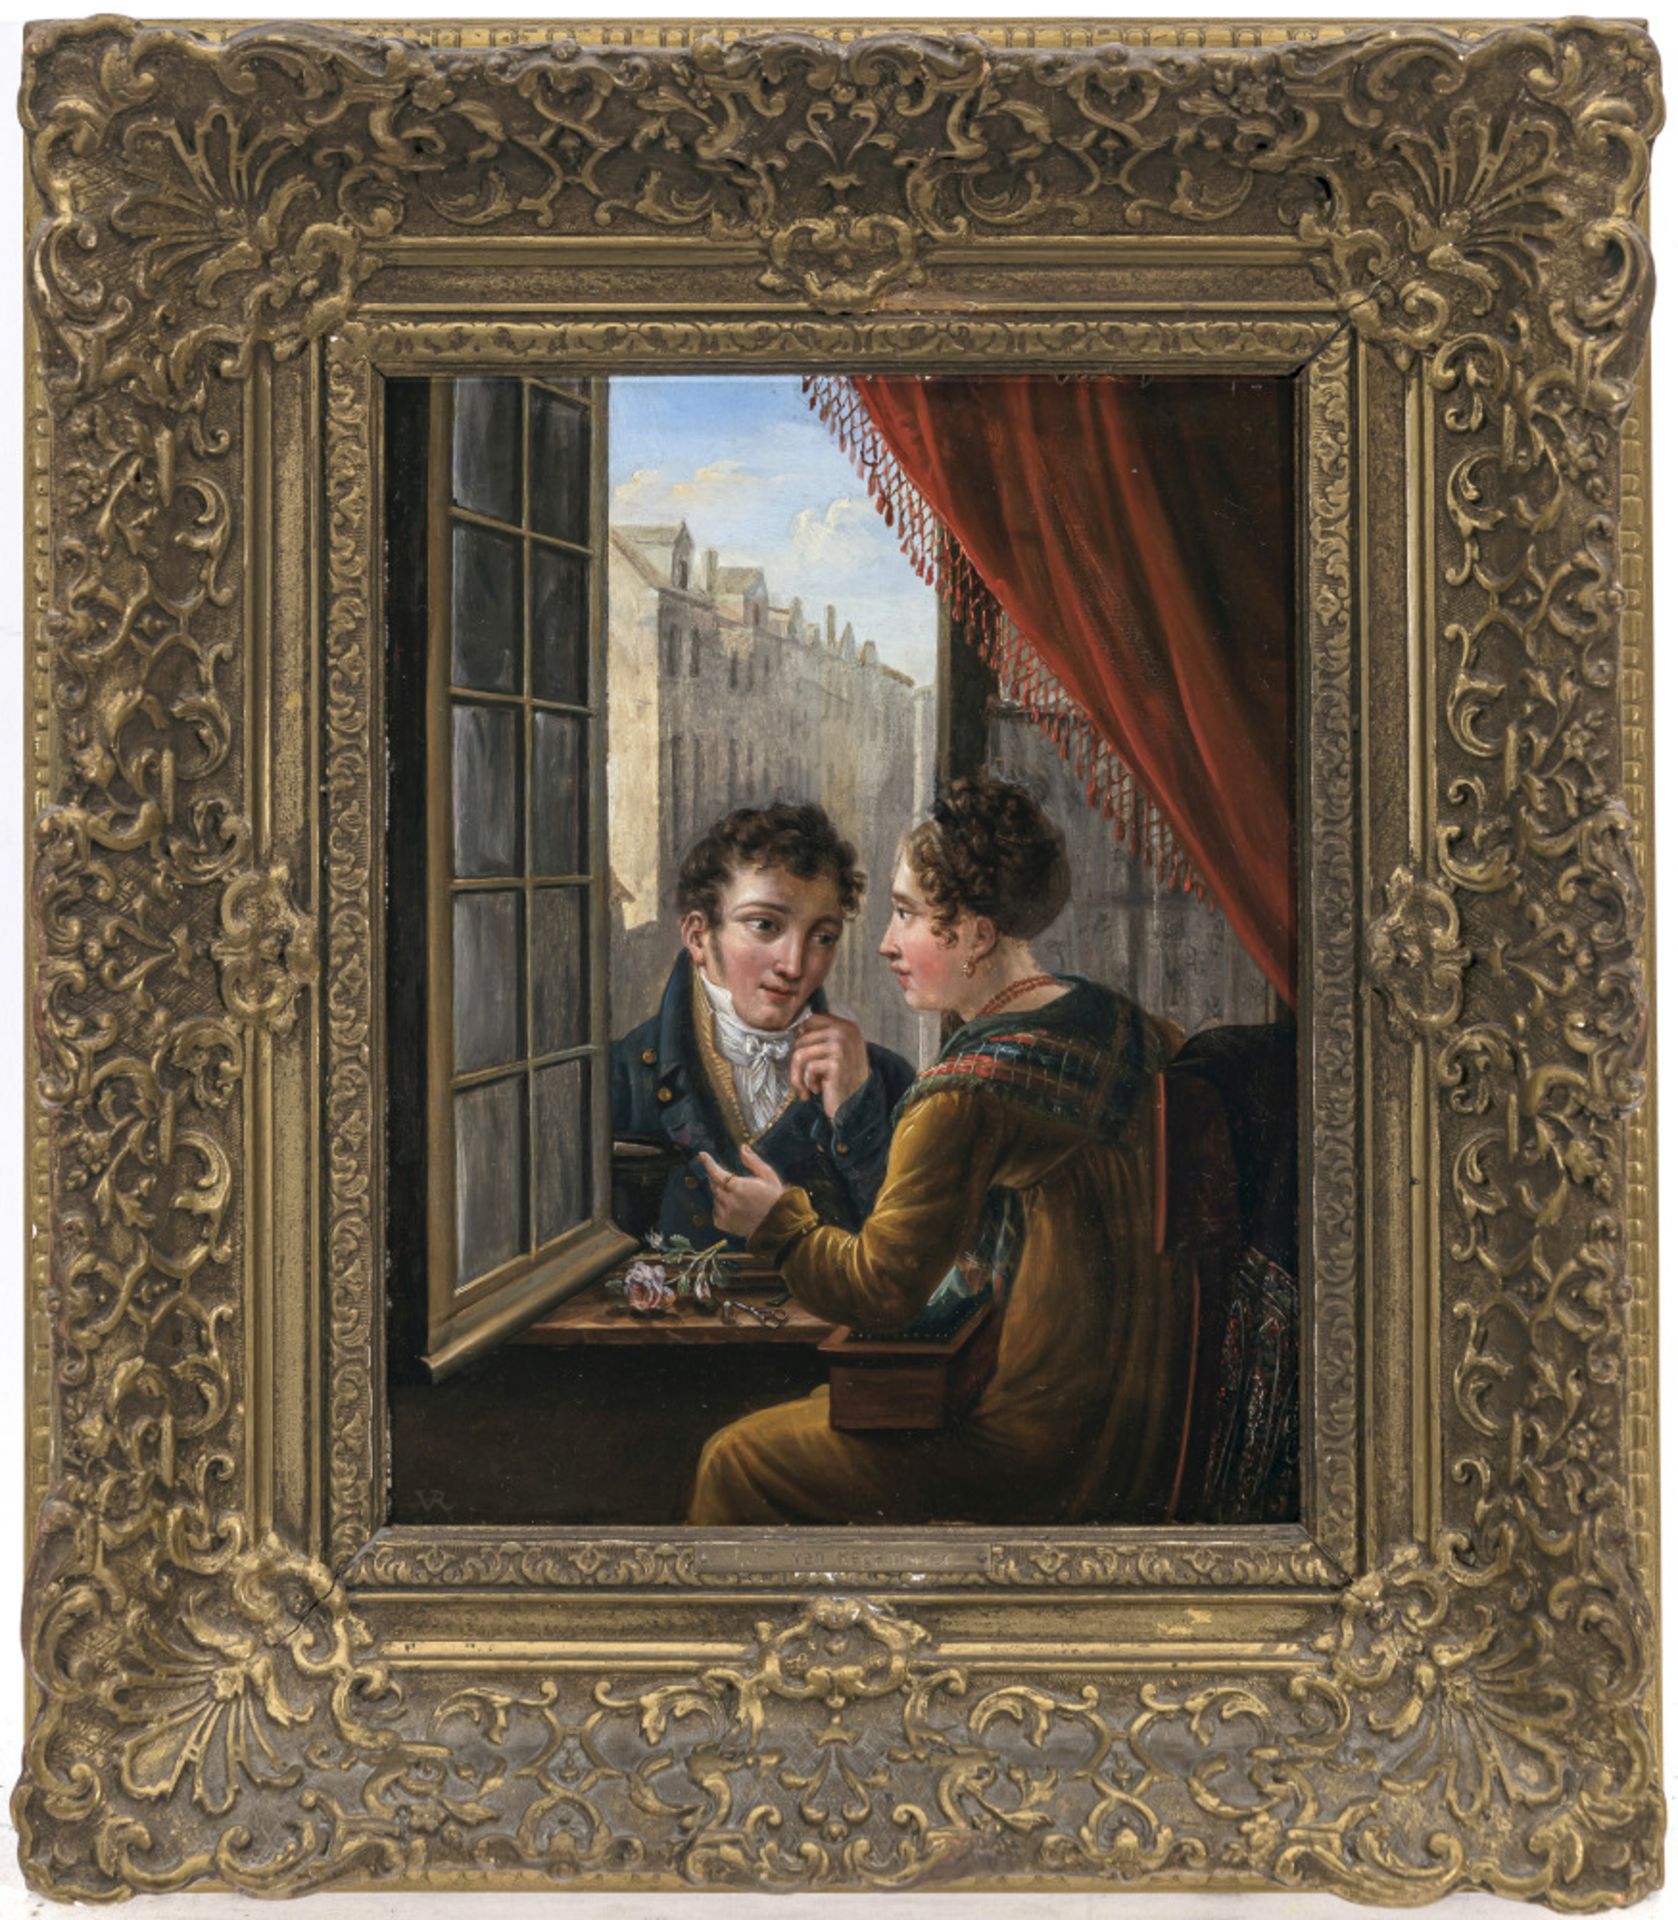 Ignatius Jozef Pieter van Regemorter - Gallant couple at the window - Image 2 of 2